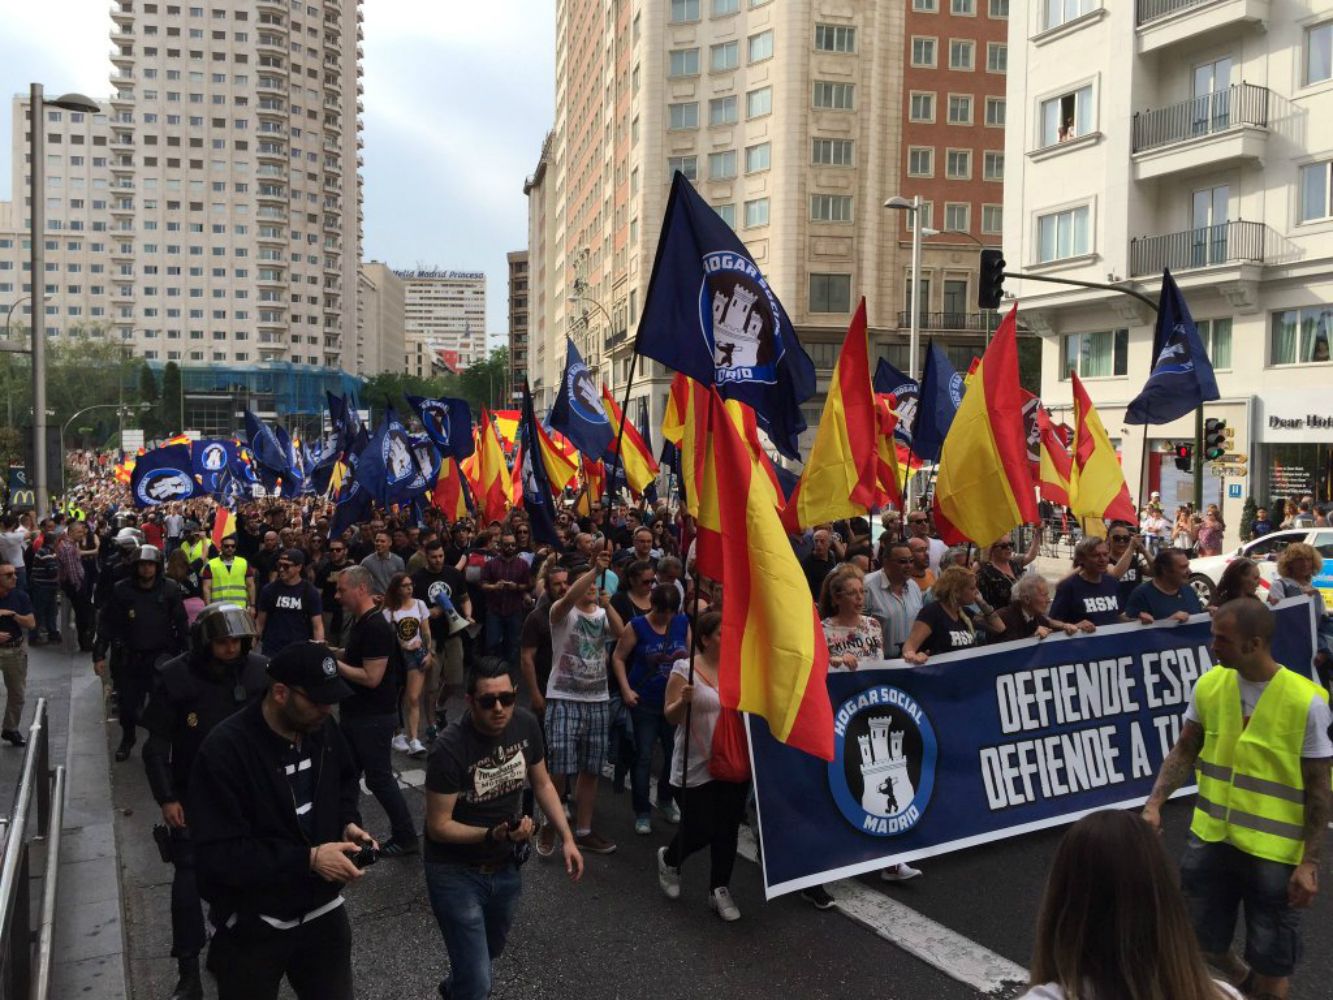 Denuncien la manifestació neonazi d'Hogar Social Madrid per incitar l'odi